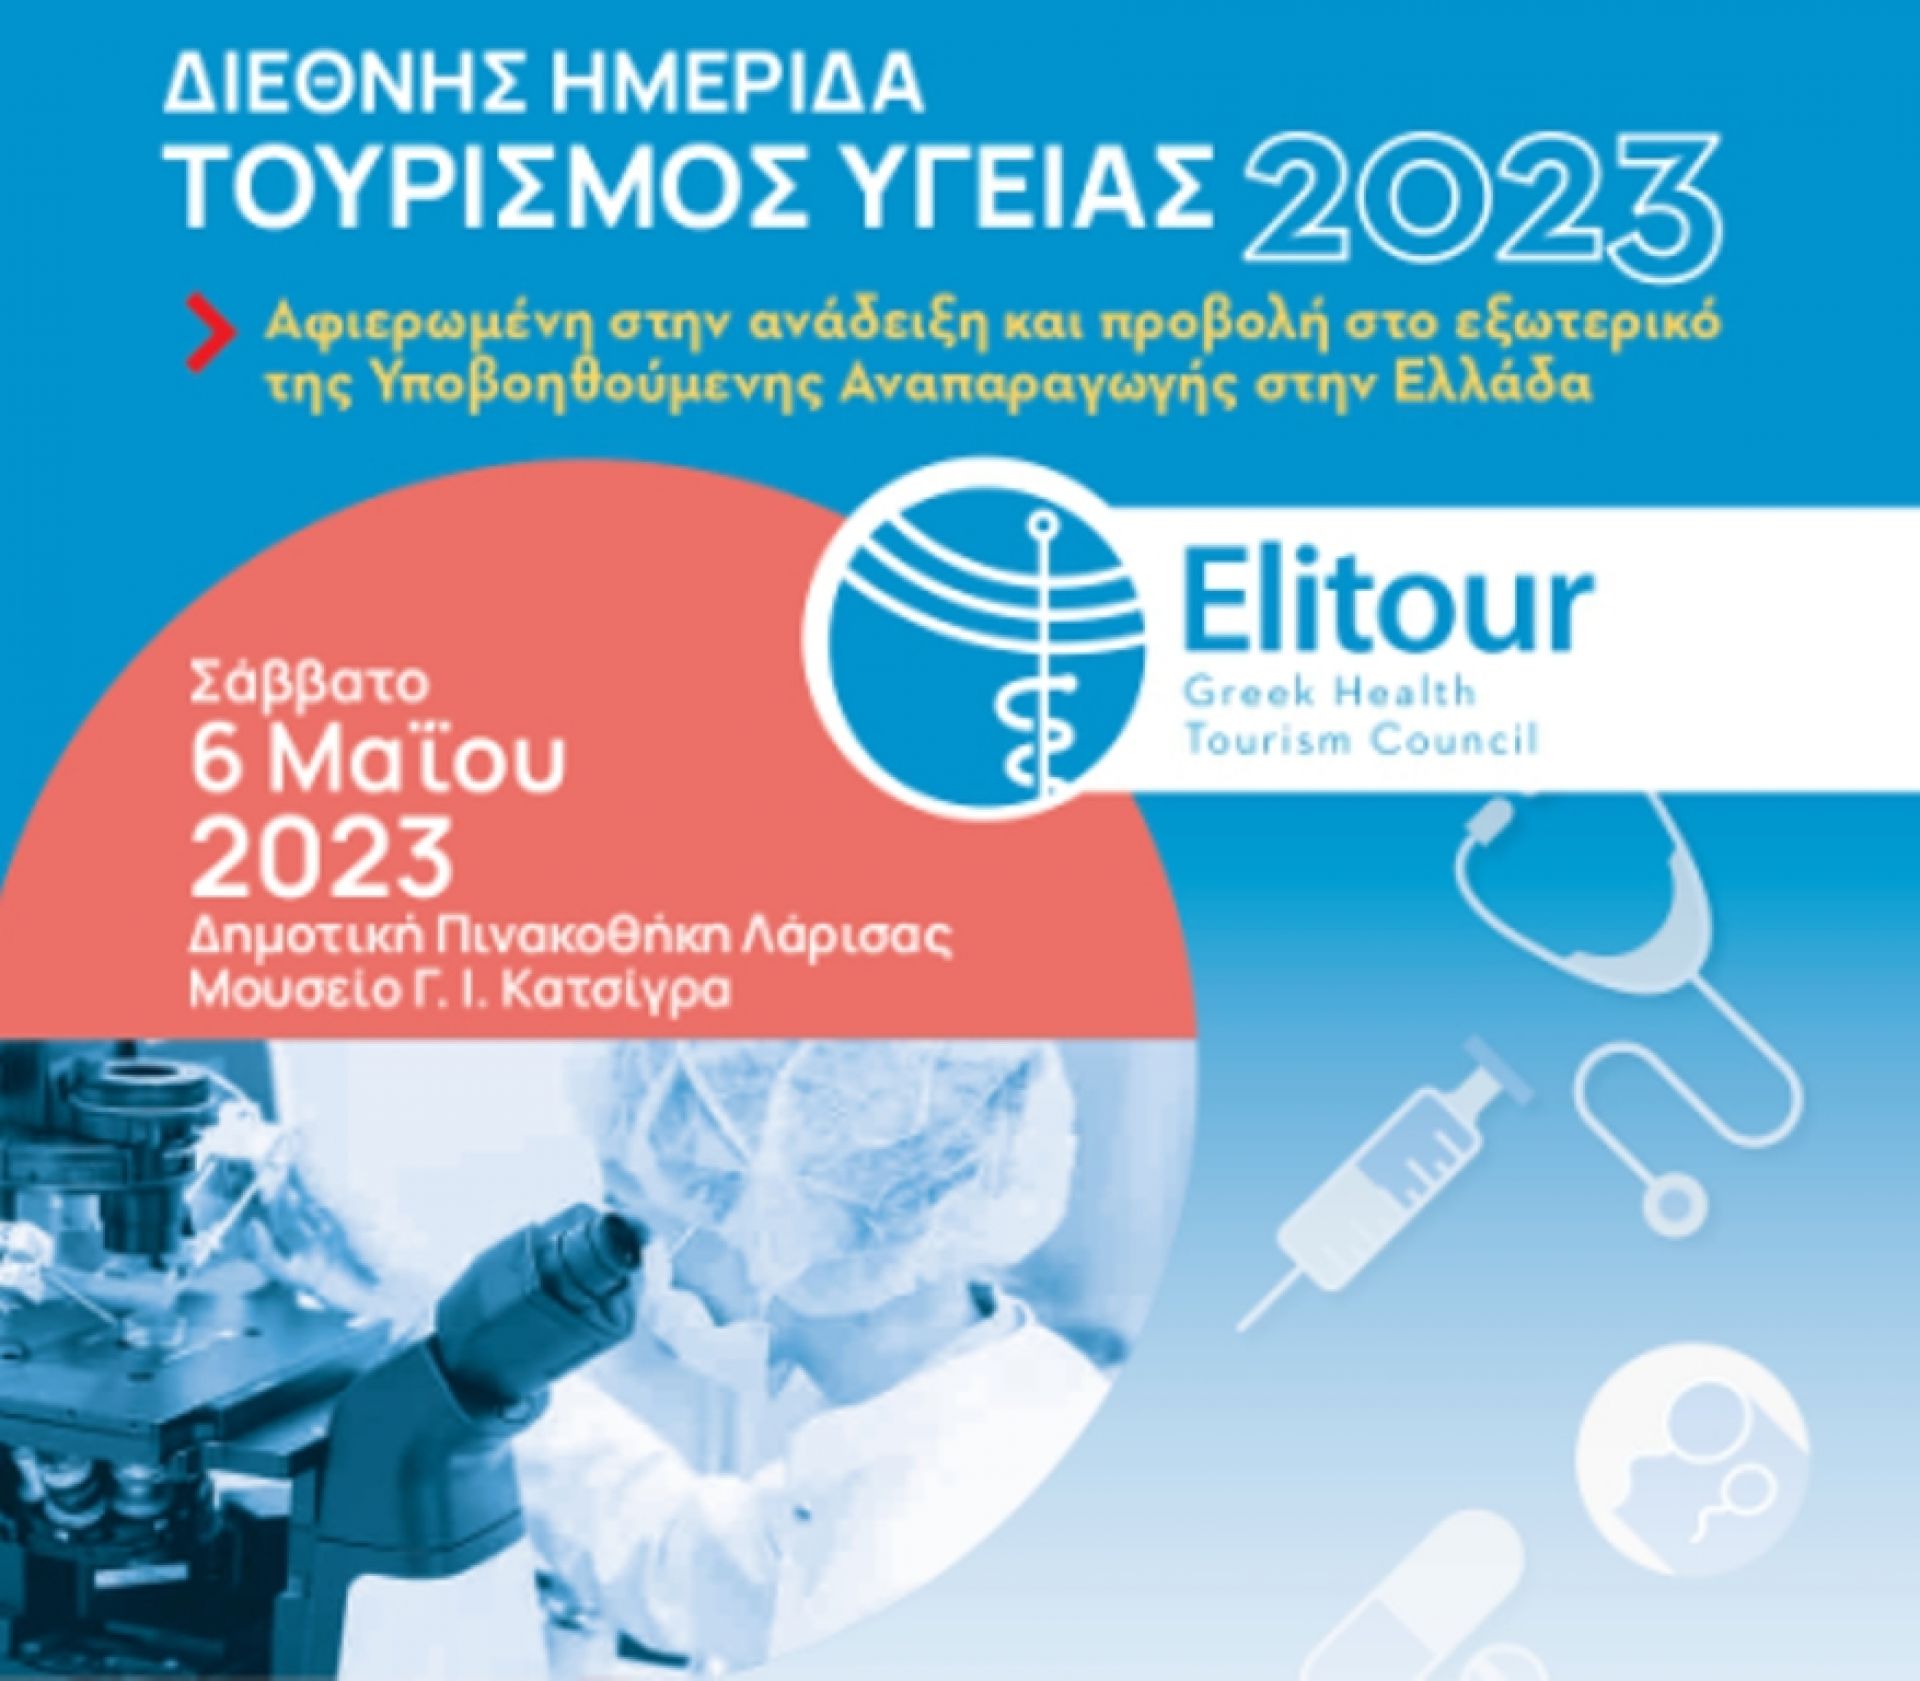 Διεθνής Ημερίδα Τουρισμός Υγείας 2023 στη Λάρισα